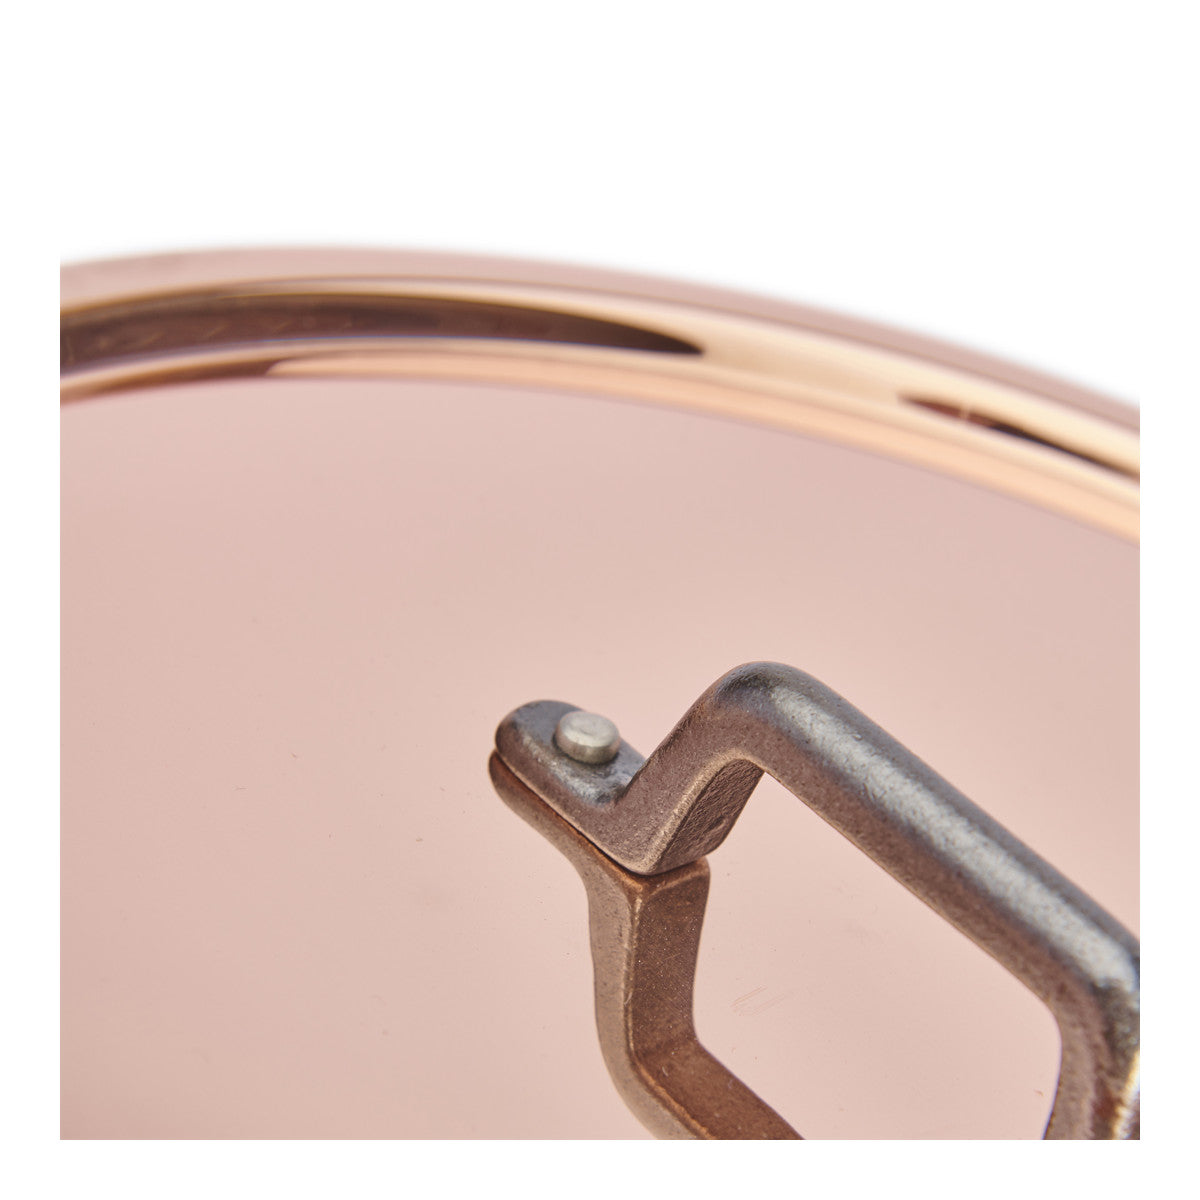 De Buyer Inocuivre copper lid, cast-iron handle